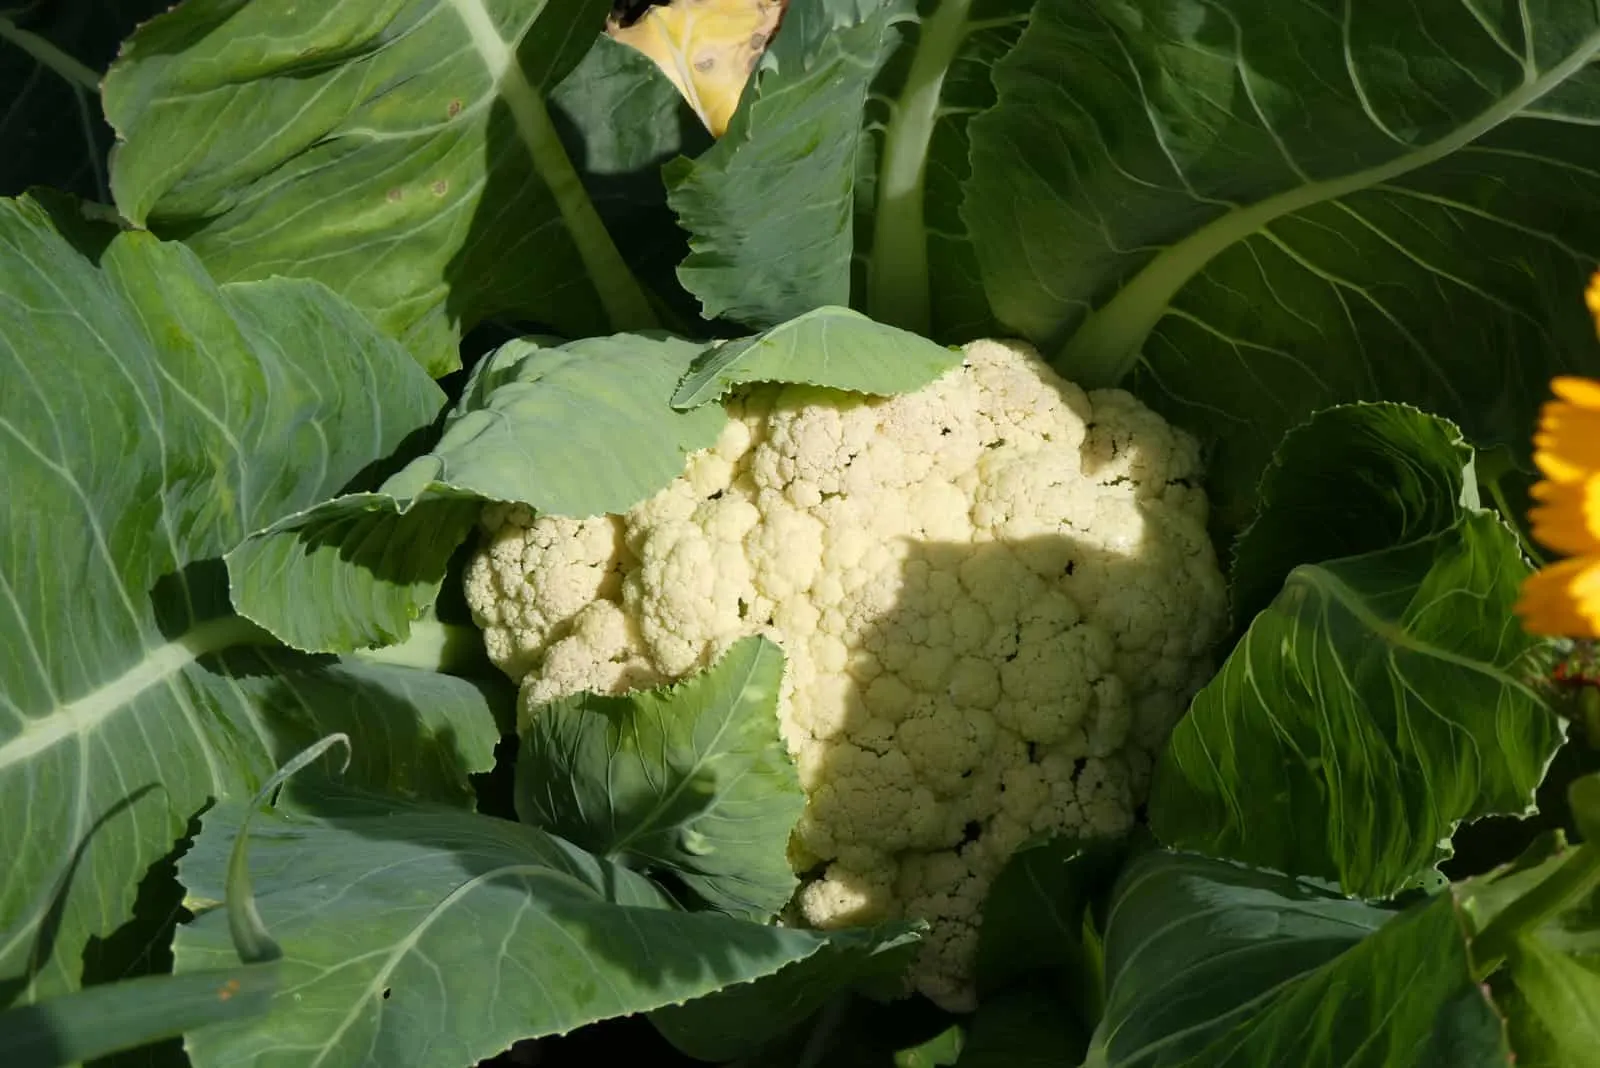 Cauliflower ready to crop in garden in the summer